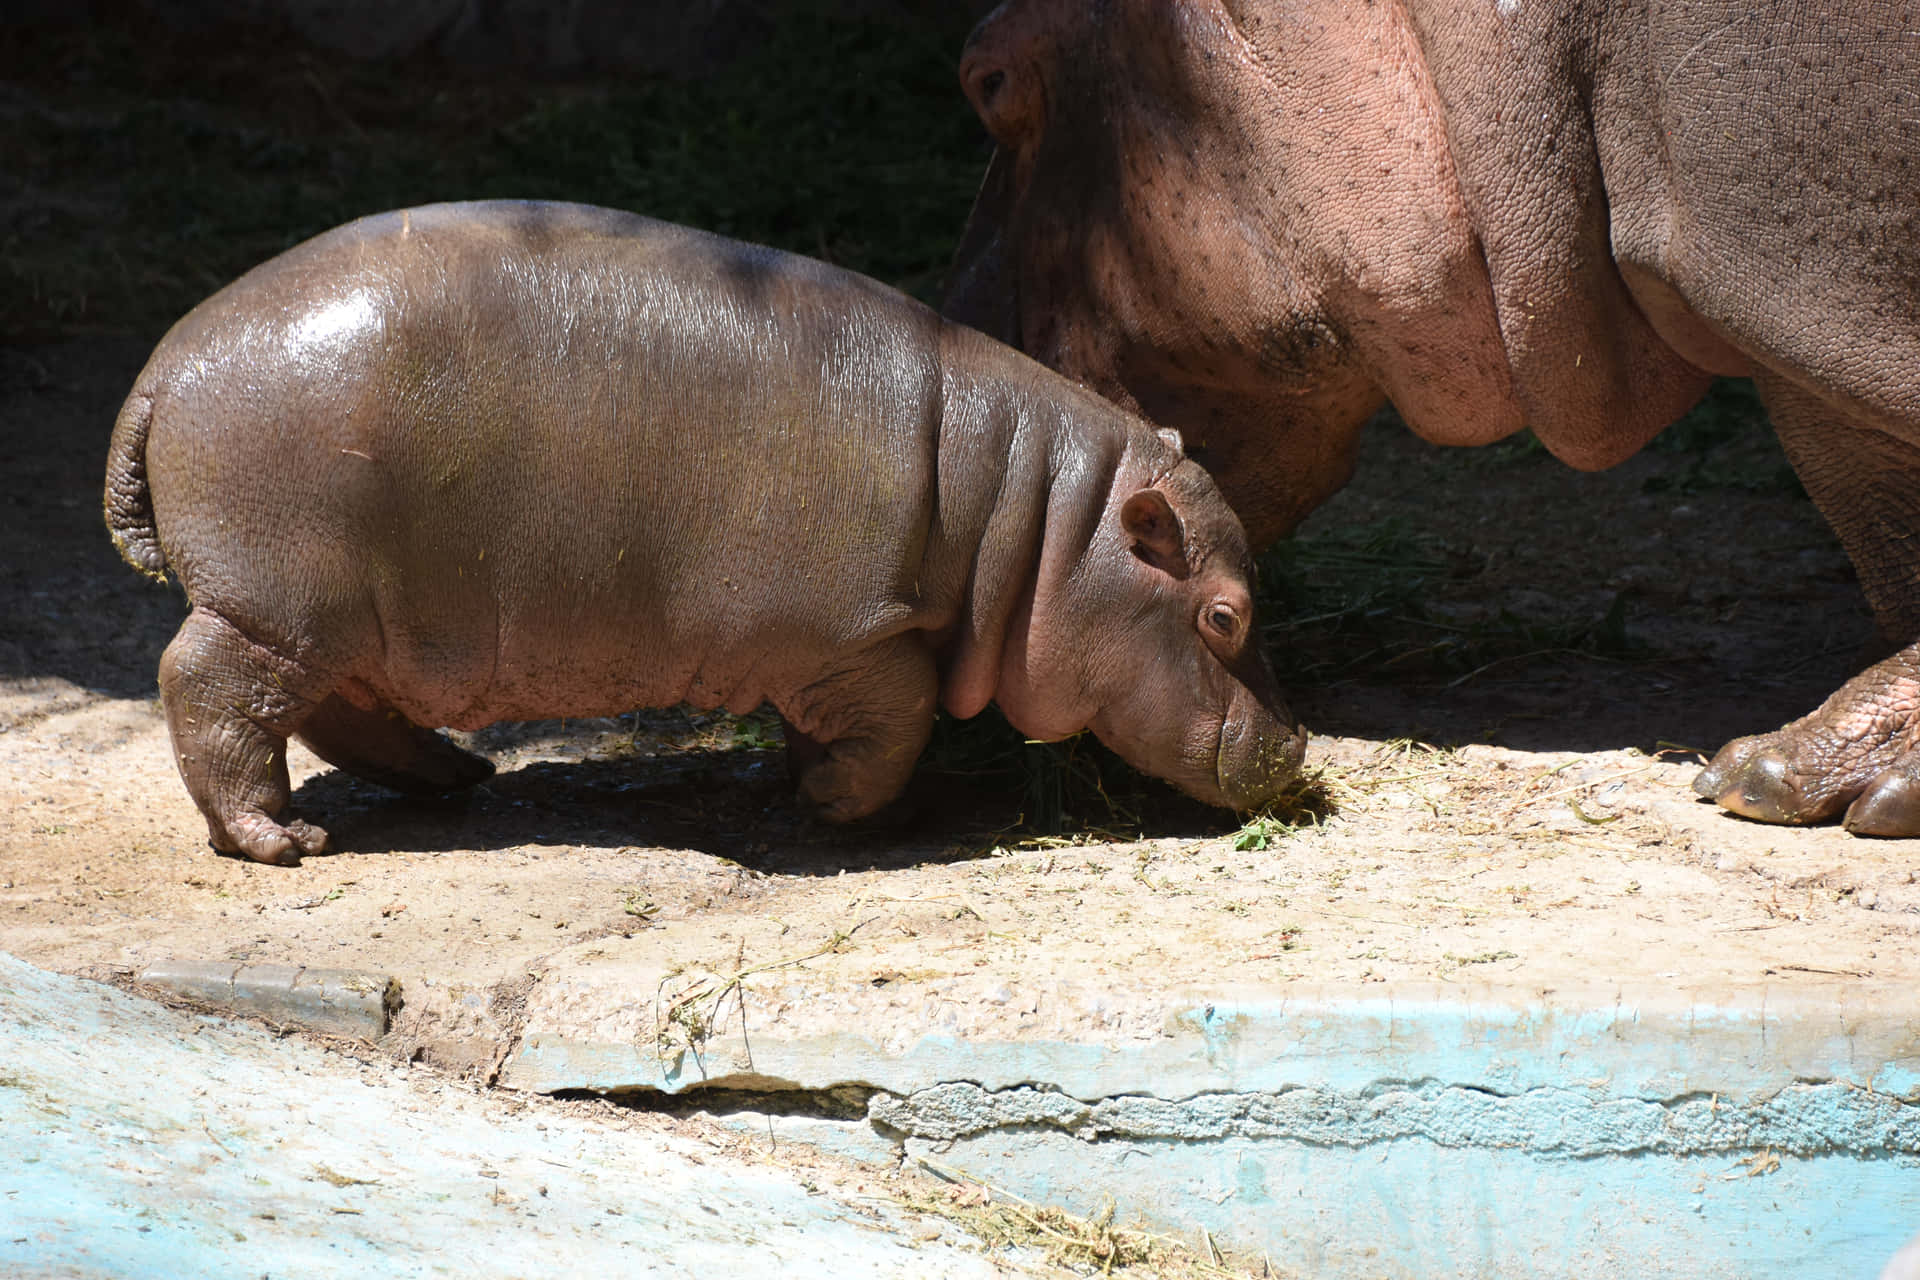 Imagende Un Hipopótamo Bebé Pequeño Y Lindo.